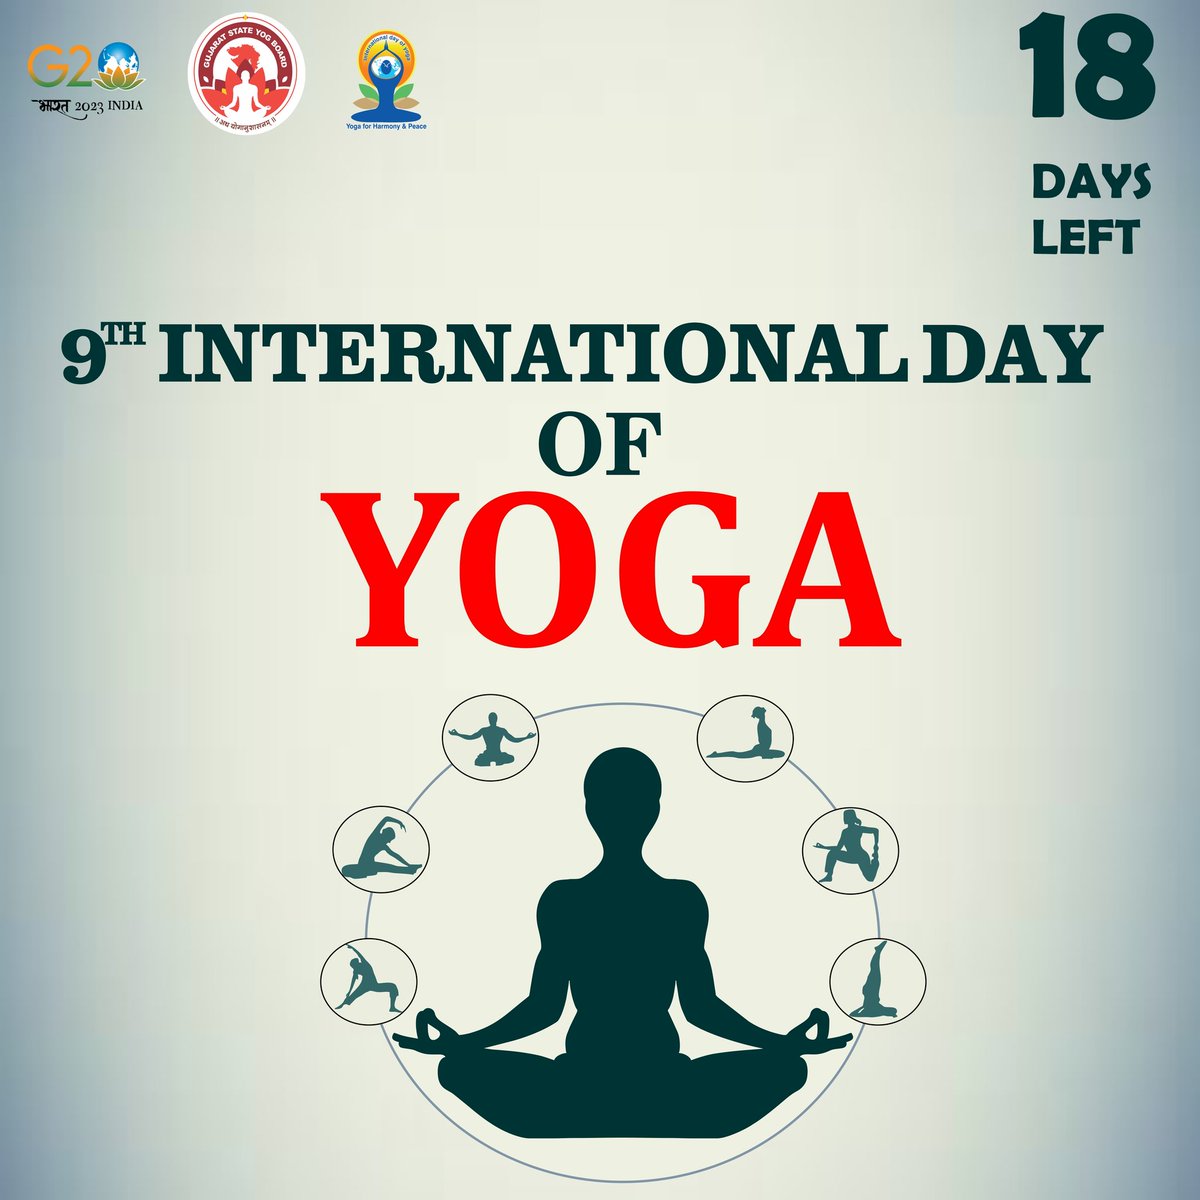 International day of Yoga 2023
Count down started
18 Days left only 

#IDY2023Countdown #GujaratStateYogBoard #yoga #yogaflow #yogapractice #Gujarat #yogabenefits #IDY2023 #yogapose #technique #parsvabakasana #yogafit #instayoga #yogaplay #photobomb #ekapadakoundinyasana…